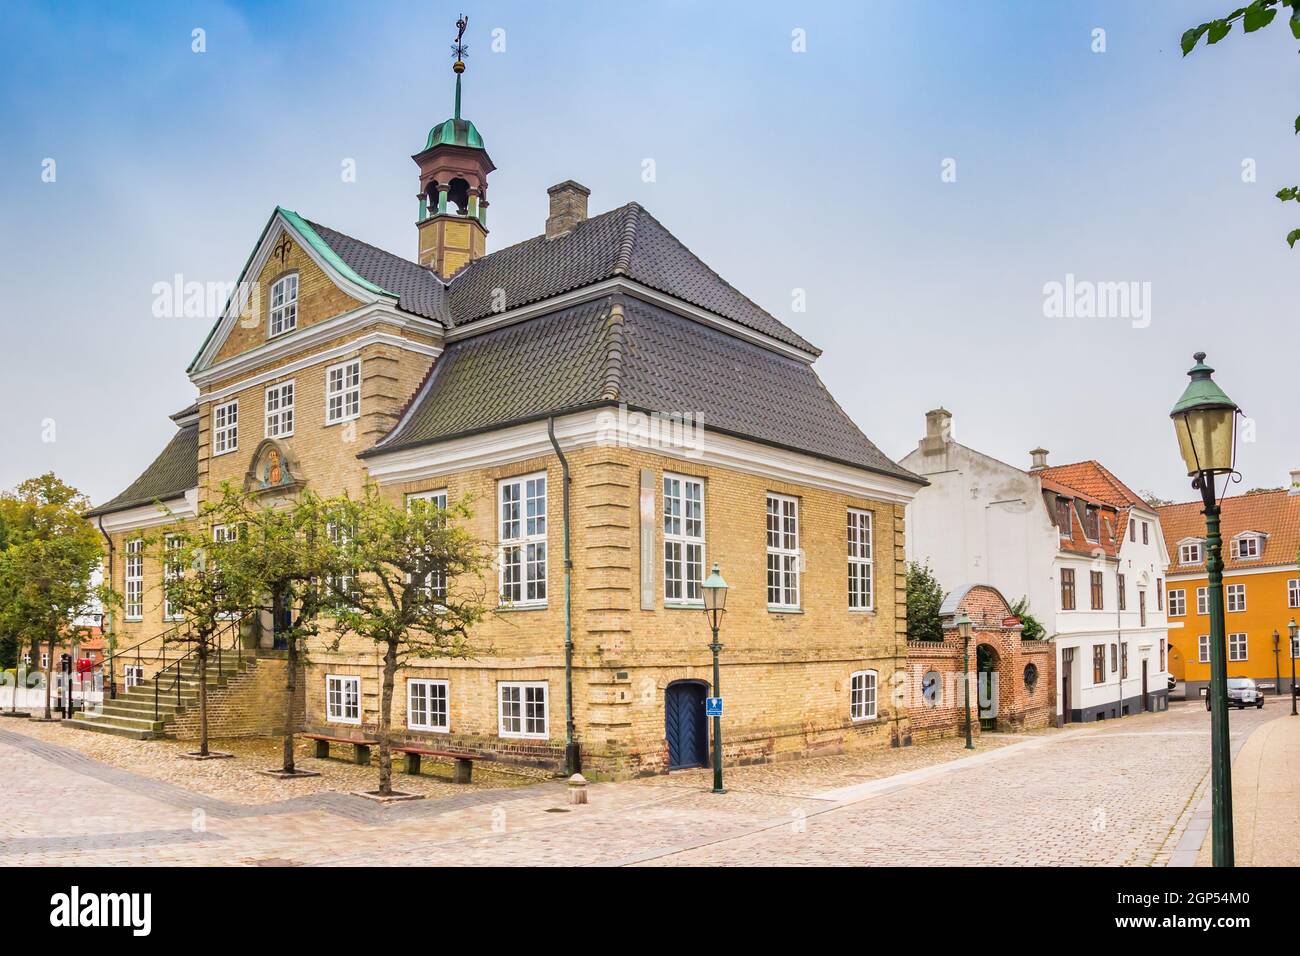 Skovgaard museum on the hstoric market square of Viborg, Denmark Stock Photo